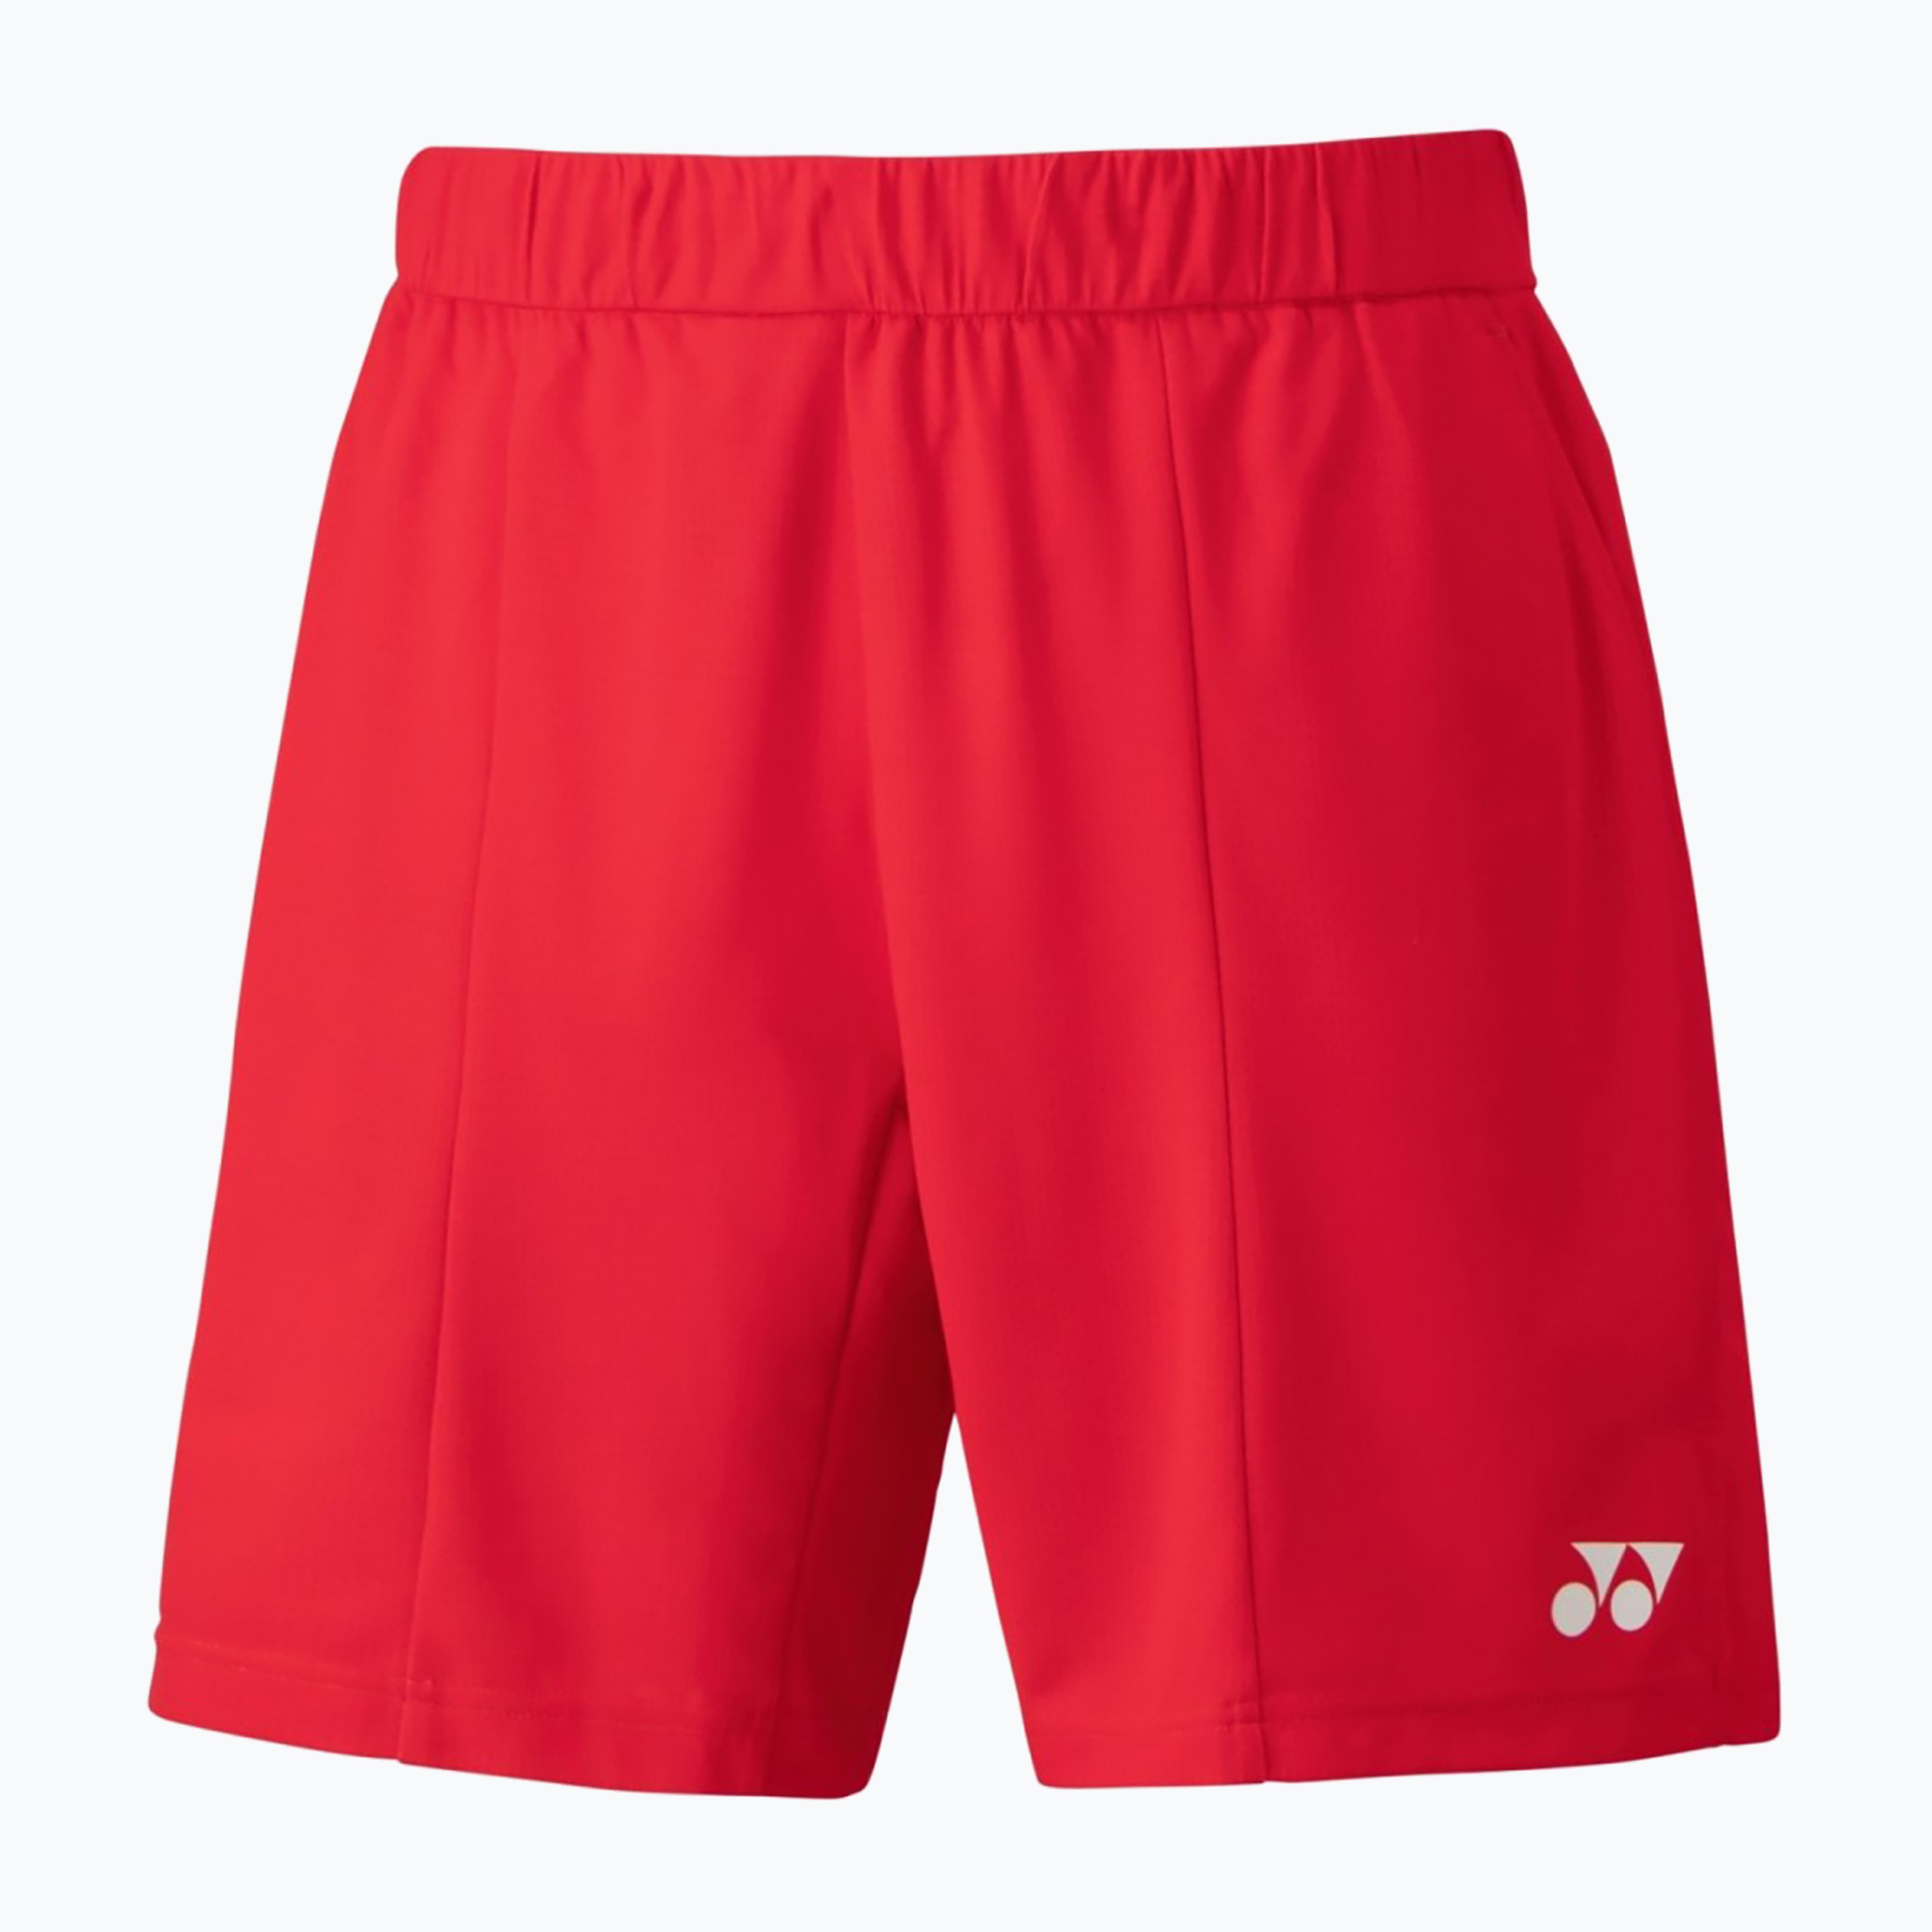 Мъжки шорти за тенис YONEX Knit red CSM151383CR